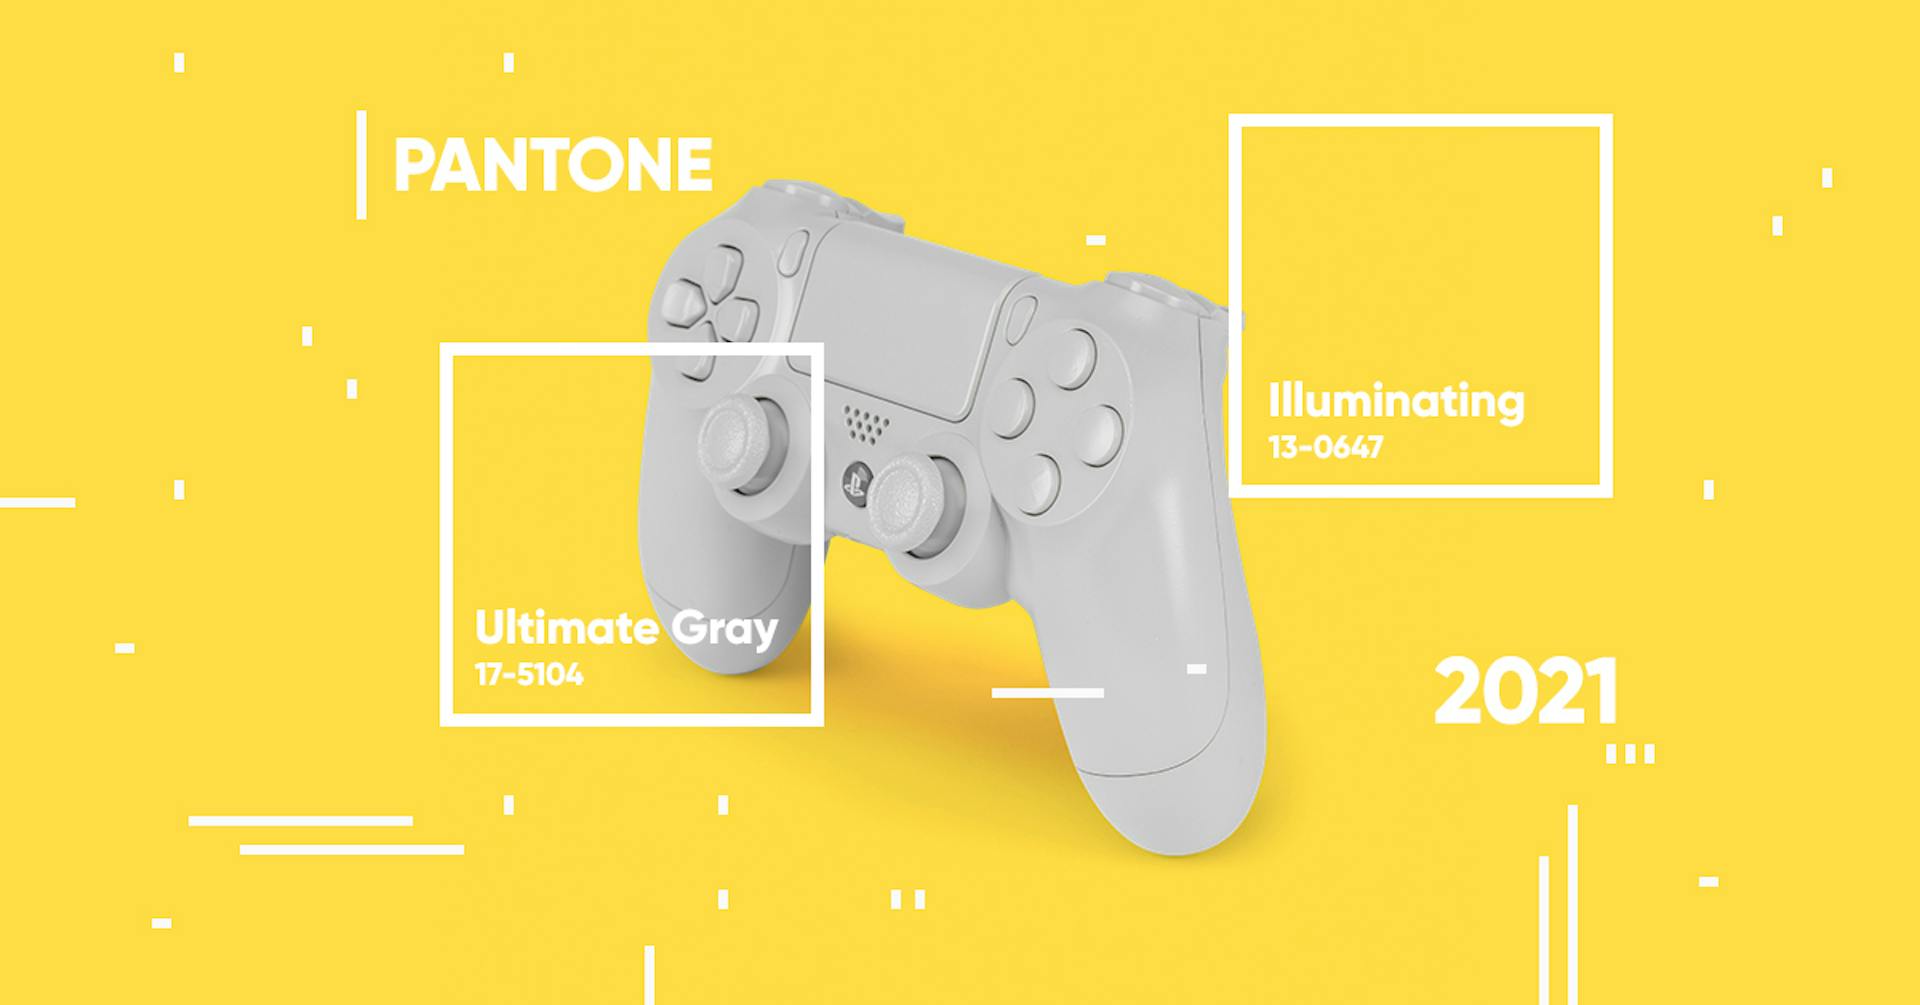 Revelación Pantone color 2021: ultimate gray + illuminating